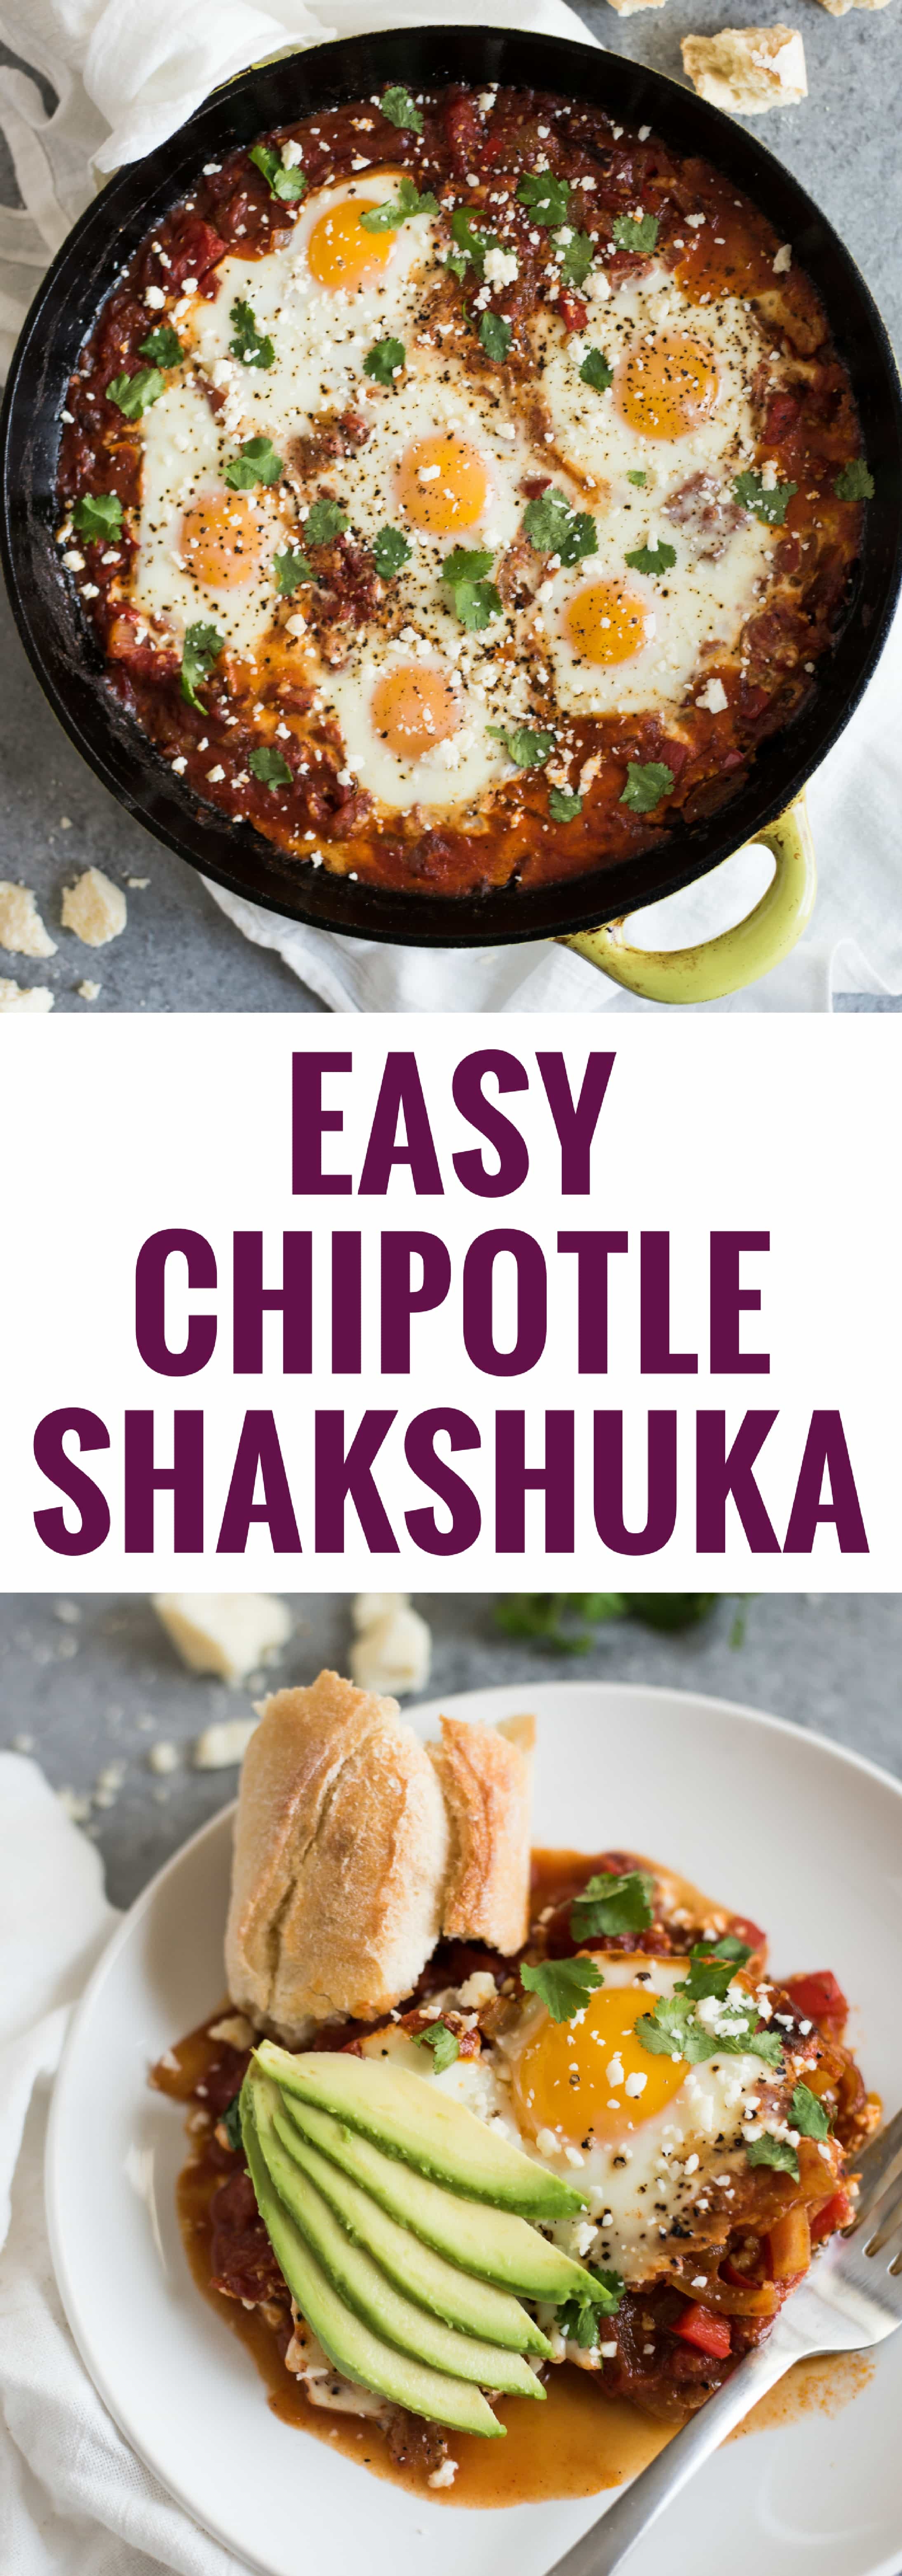 Chipotle Shakshuka Recipe - Isabel Eats